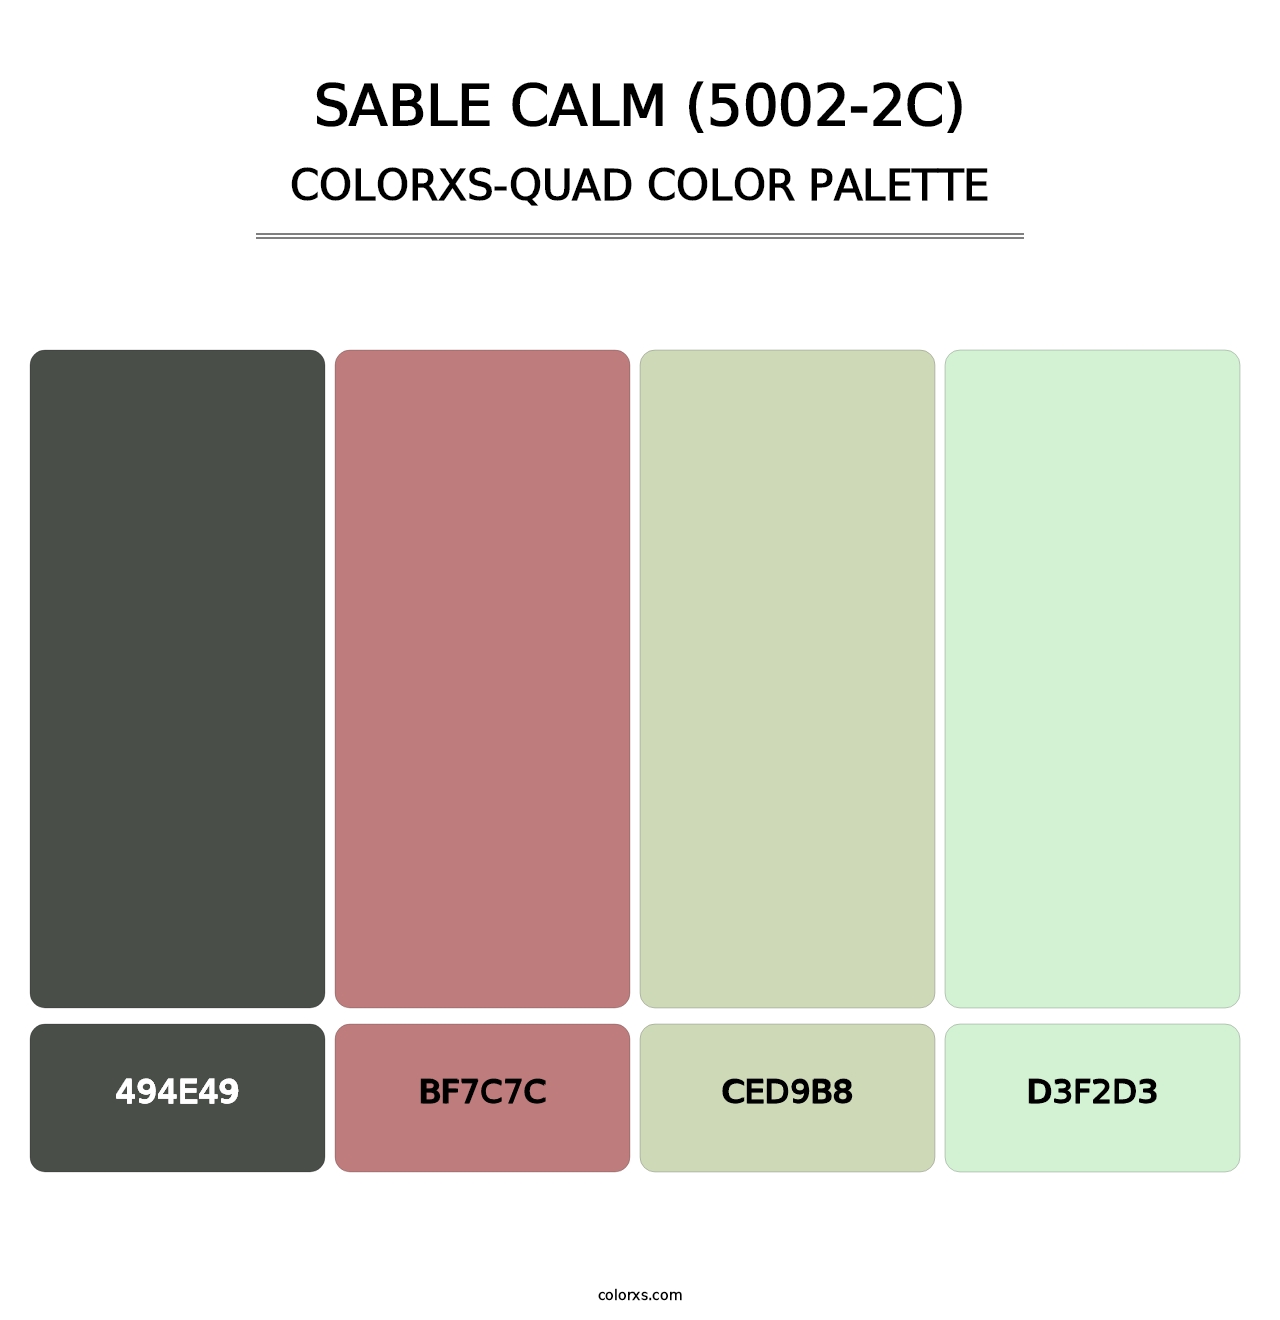 Sable Calm (5002-2C) - Colorxs Quad Palette